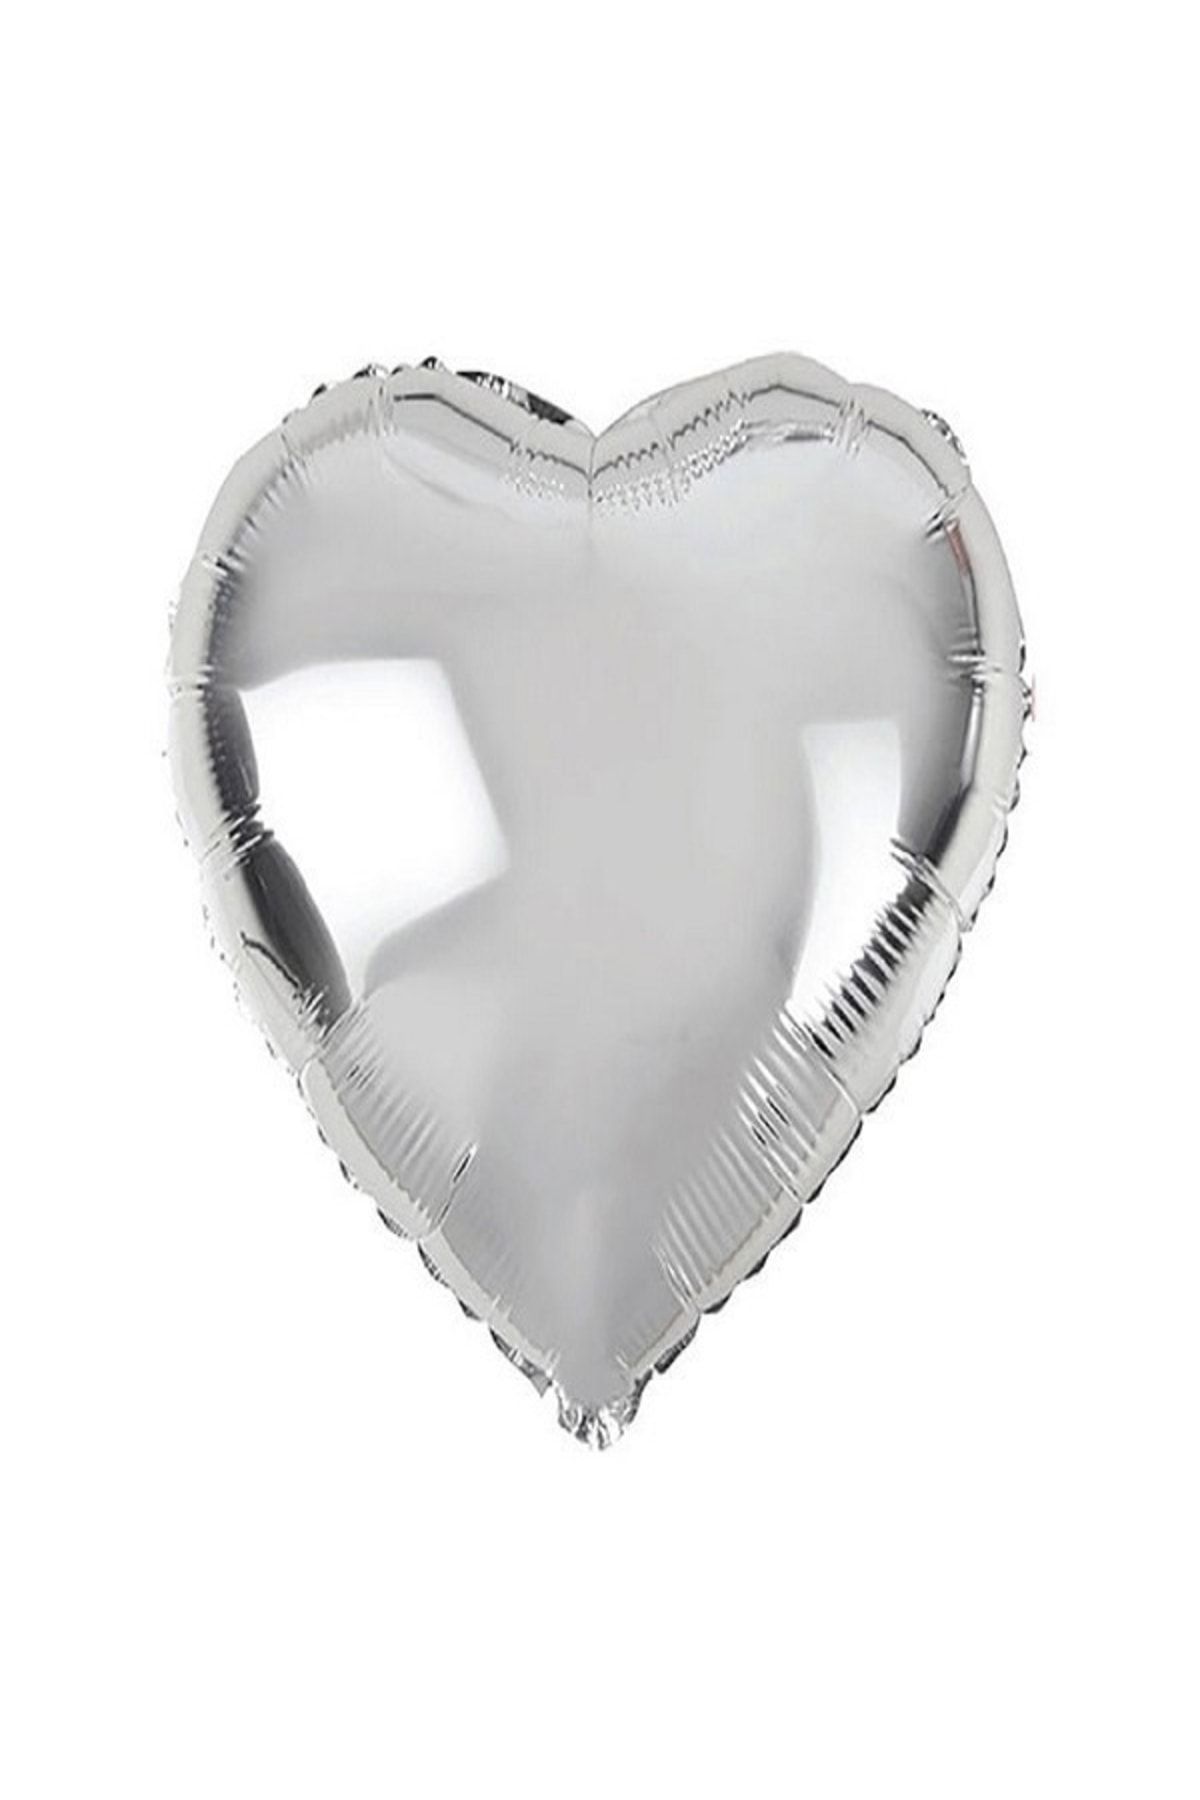 Renkli Parti Kalp Folyo Balon Sevgililer Günü - Evlenme Teklifi Süsleme 40cm 10 Adet